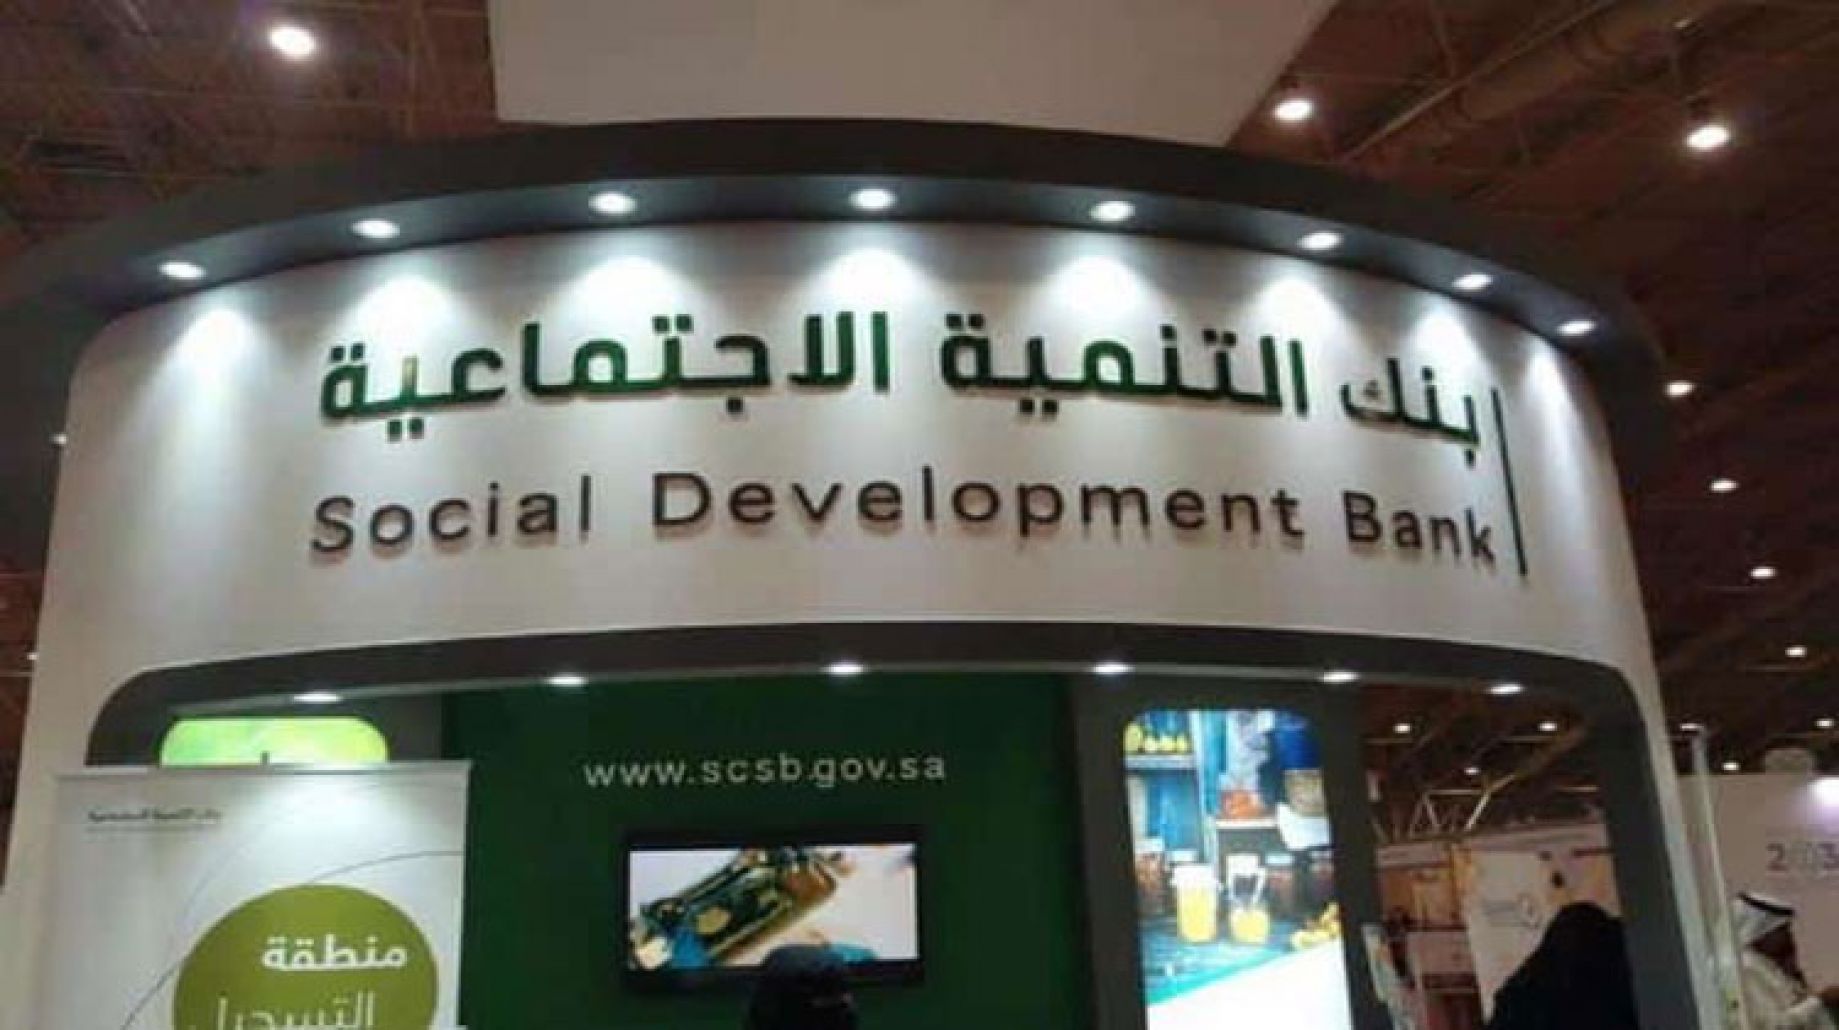 بنك التنمية الاجتماعية يرفع قرض الأسرة لـ 100 ألف